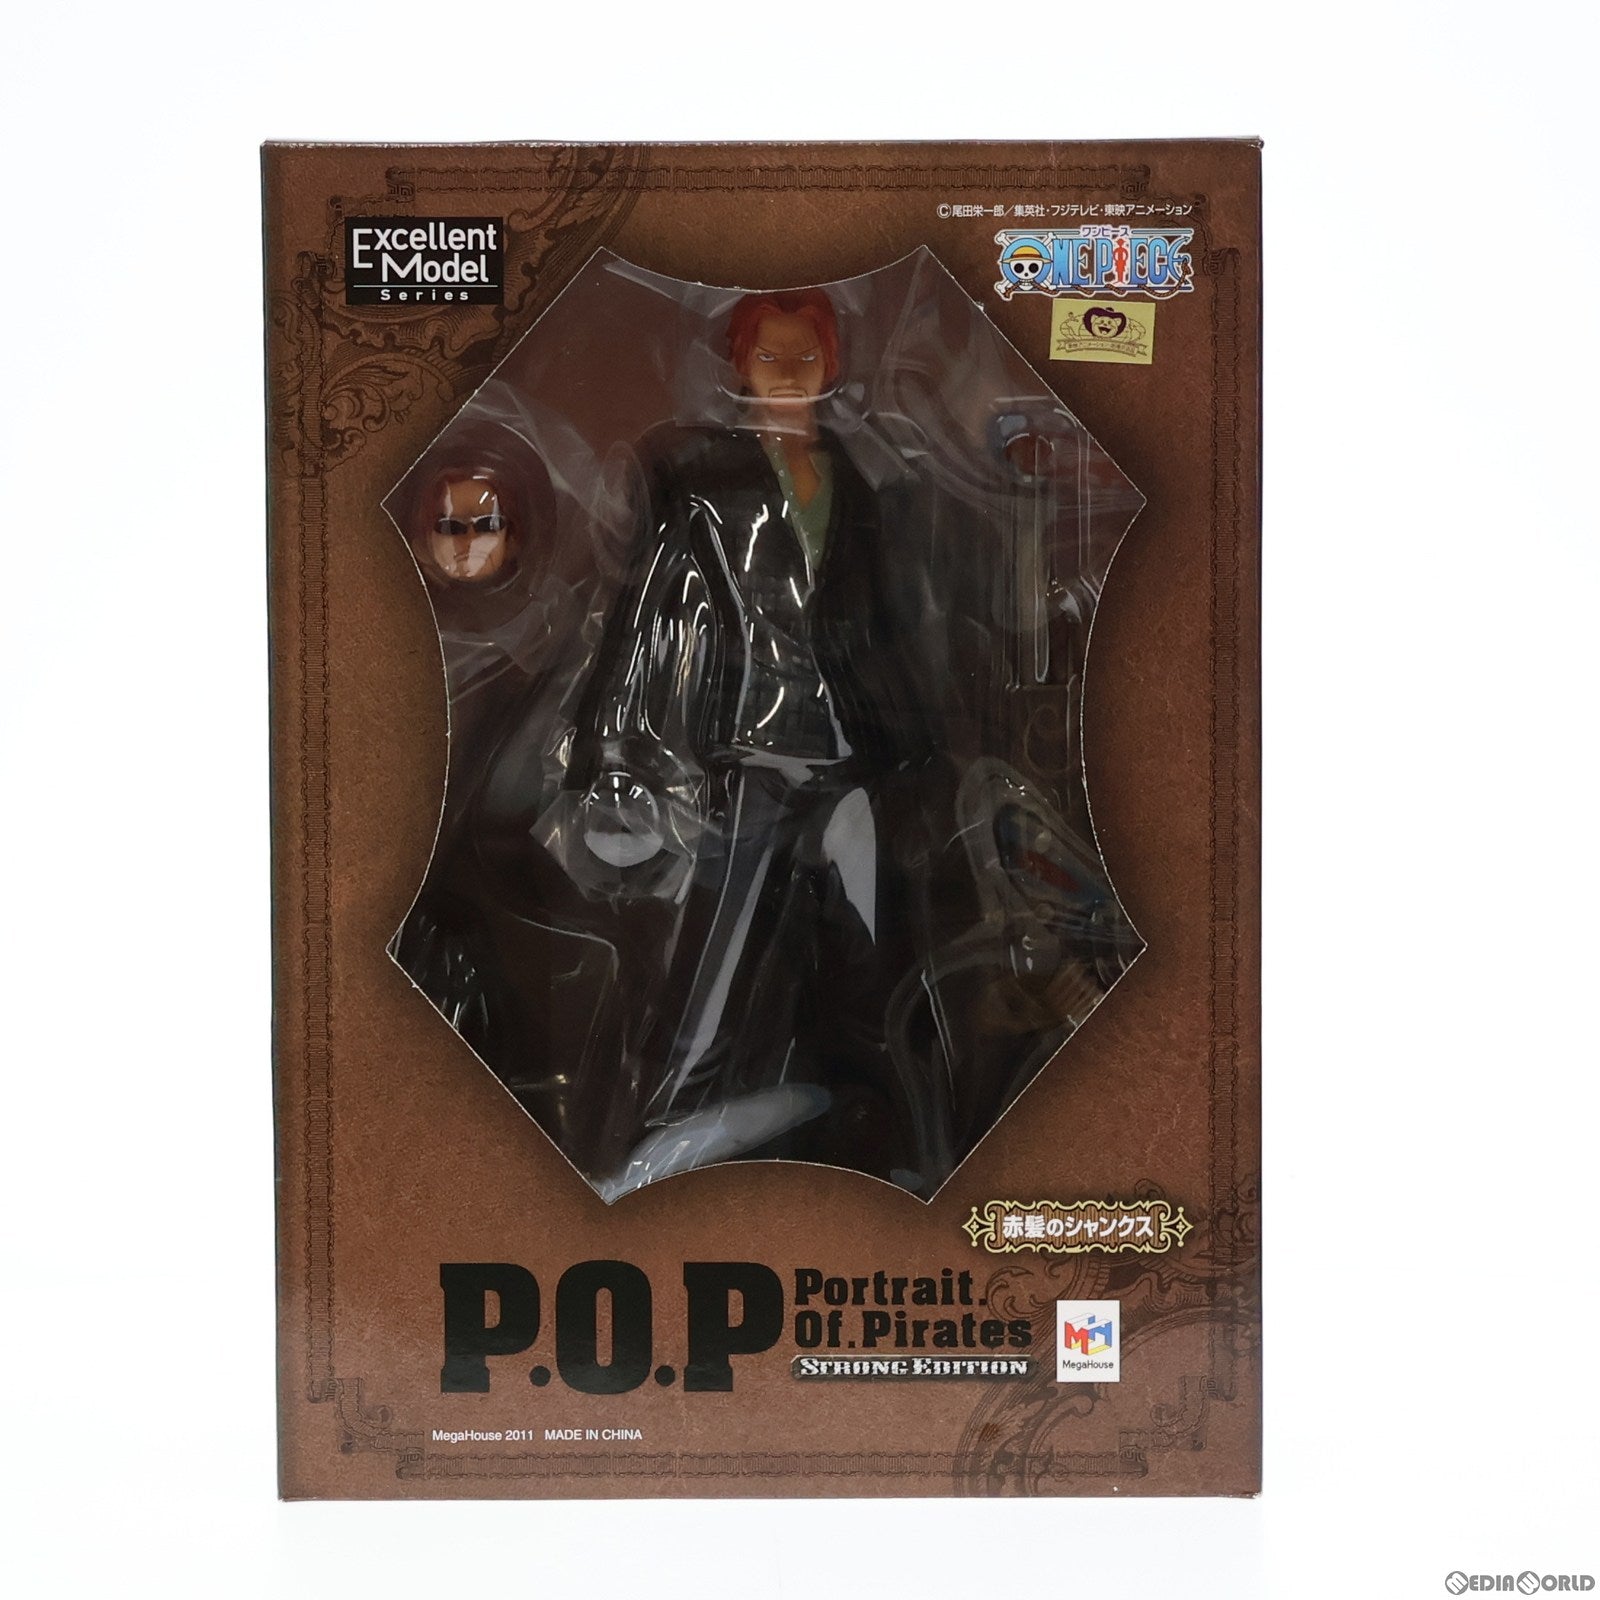 【中古即納】[FIG]Portrait.Of.Pirates P.O.P STRONG EDITION 赤髪のシャンクス ONE PIECE(ワンピース) 1/8 完成品 フィギュア メガハウス(20110531)